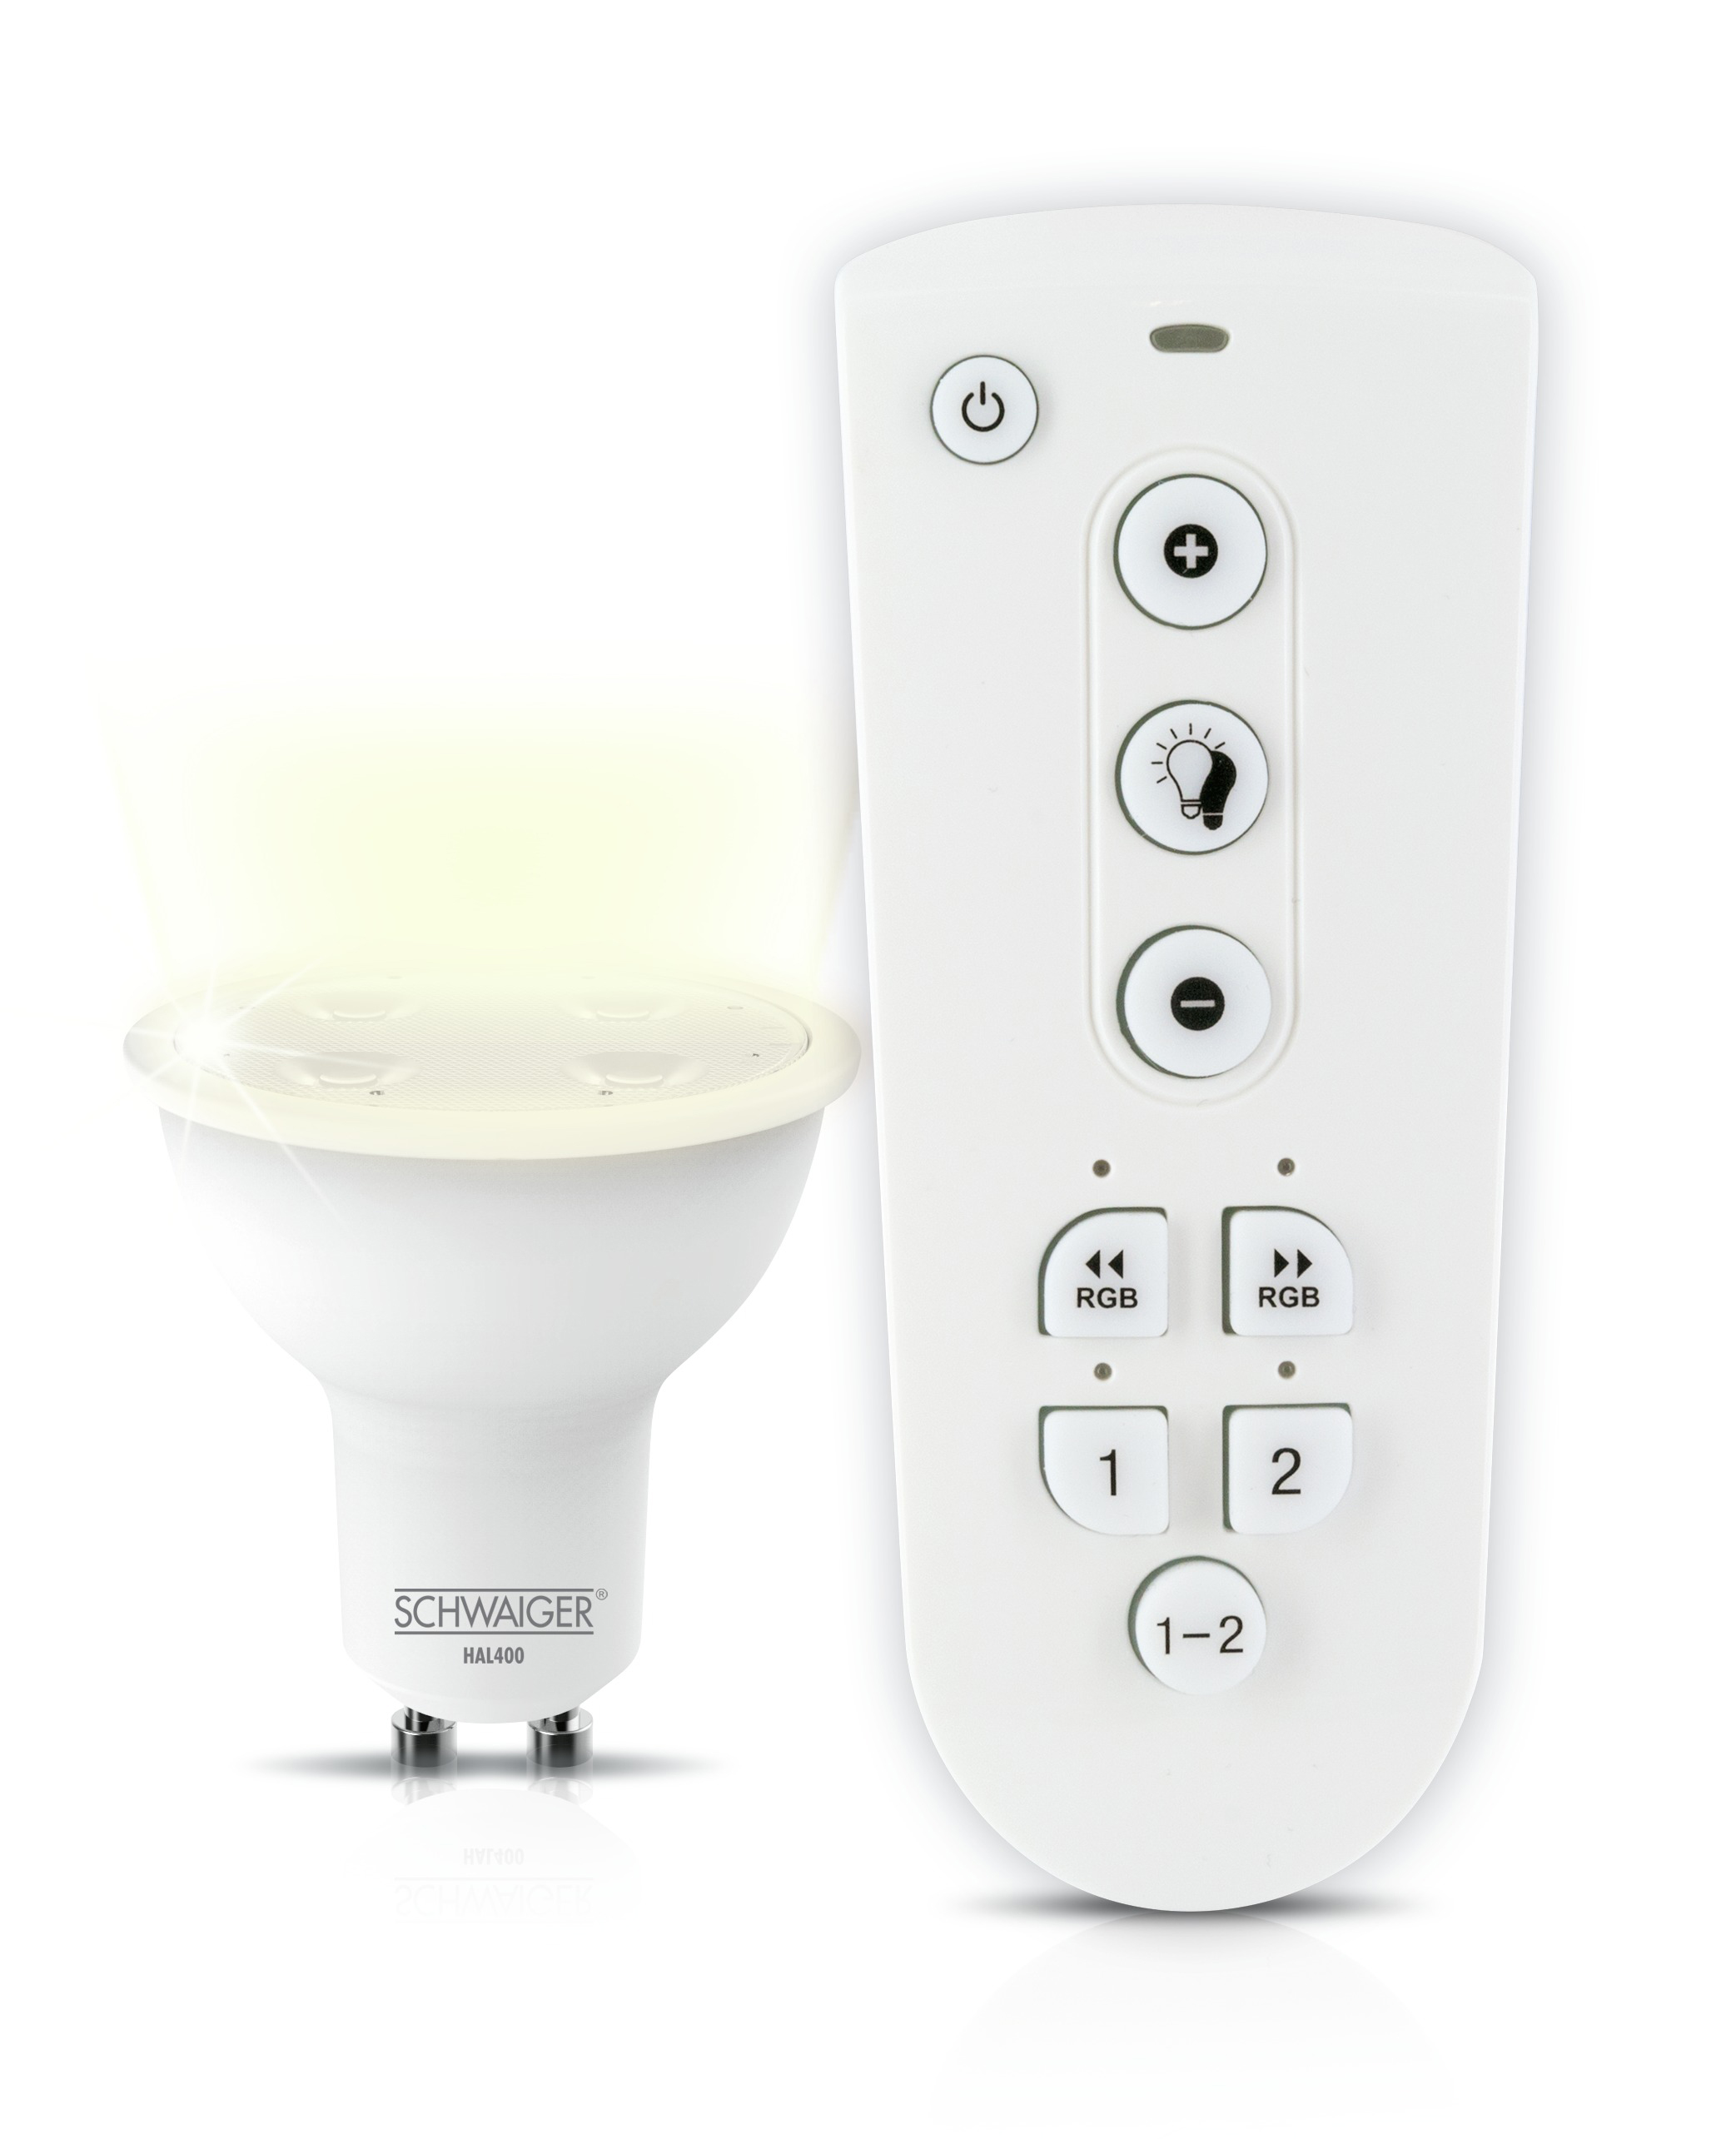 Leuchtmittel LED -HALSET400- dimmbares Set (GU10) als Warmweiß Wohnlicht SCHWAIGER